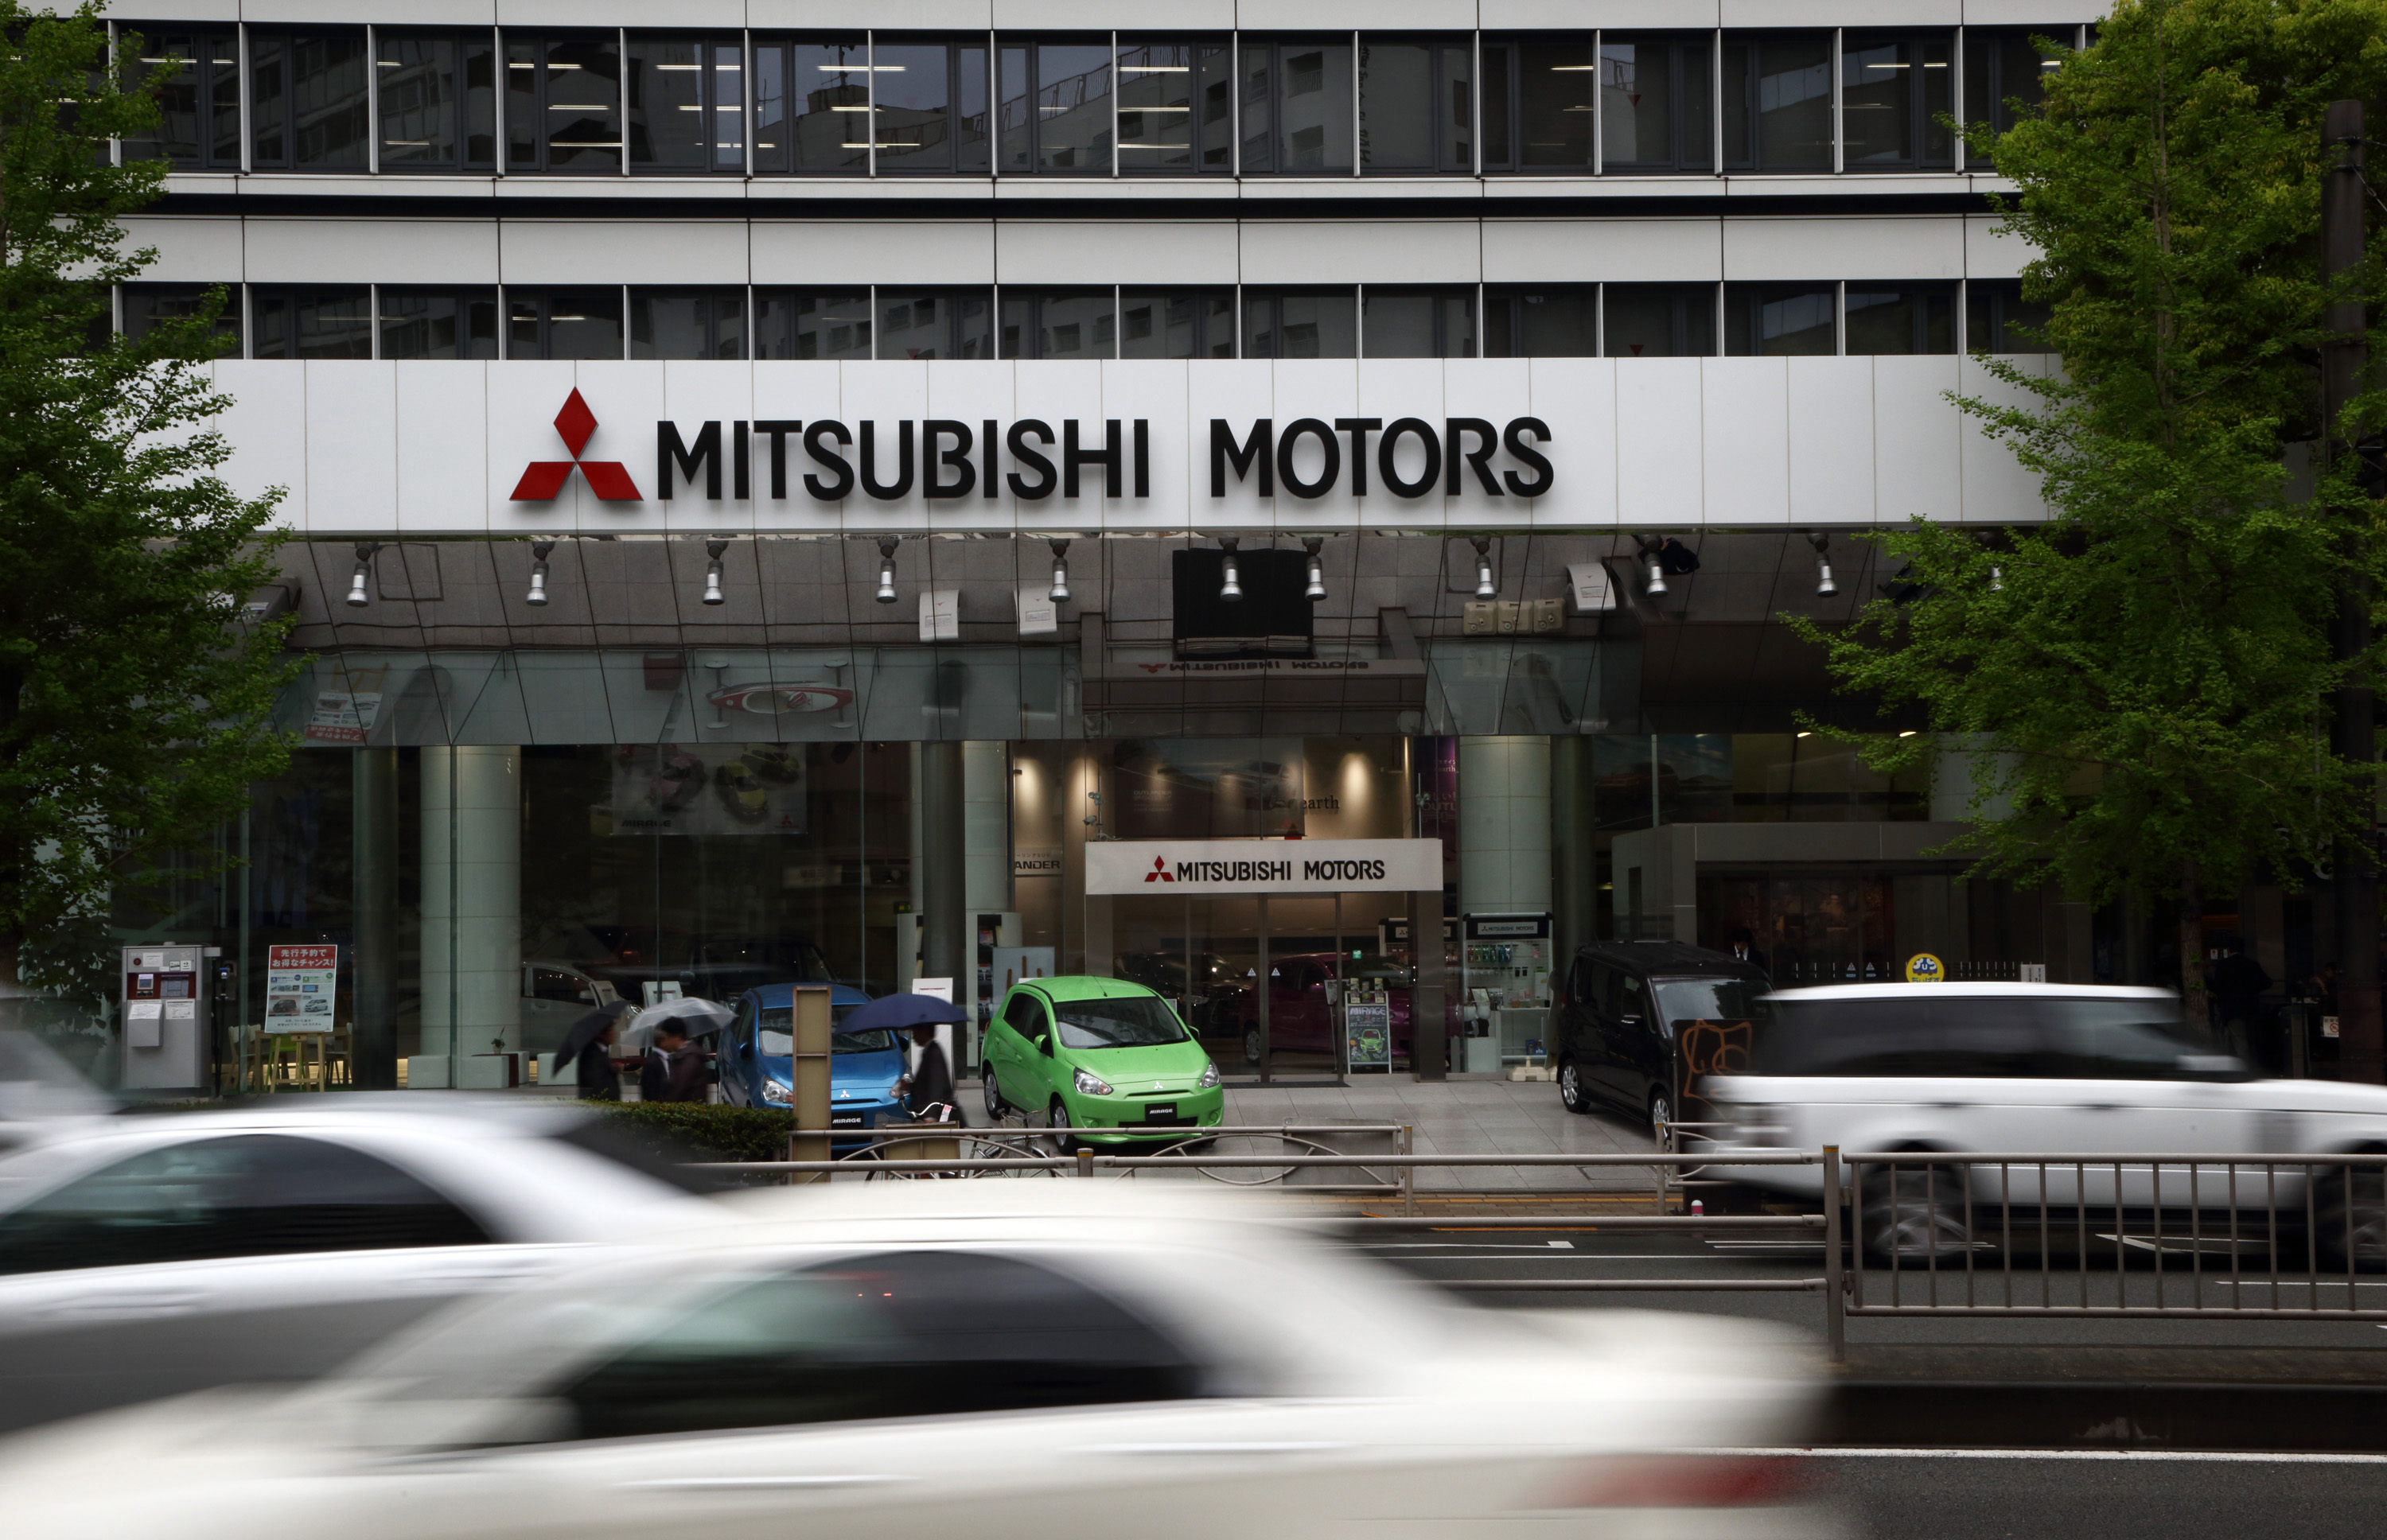  VW no fue la única que mintió; ahora admite Mitsubishi manipulaciones en pruebas de emisiones